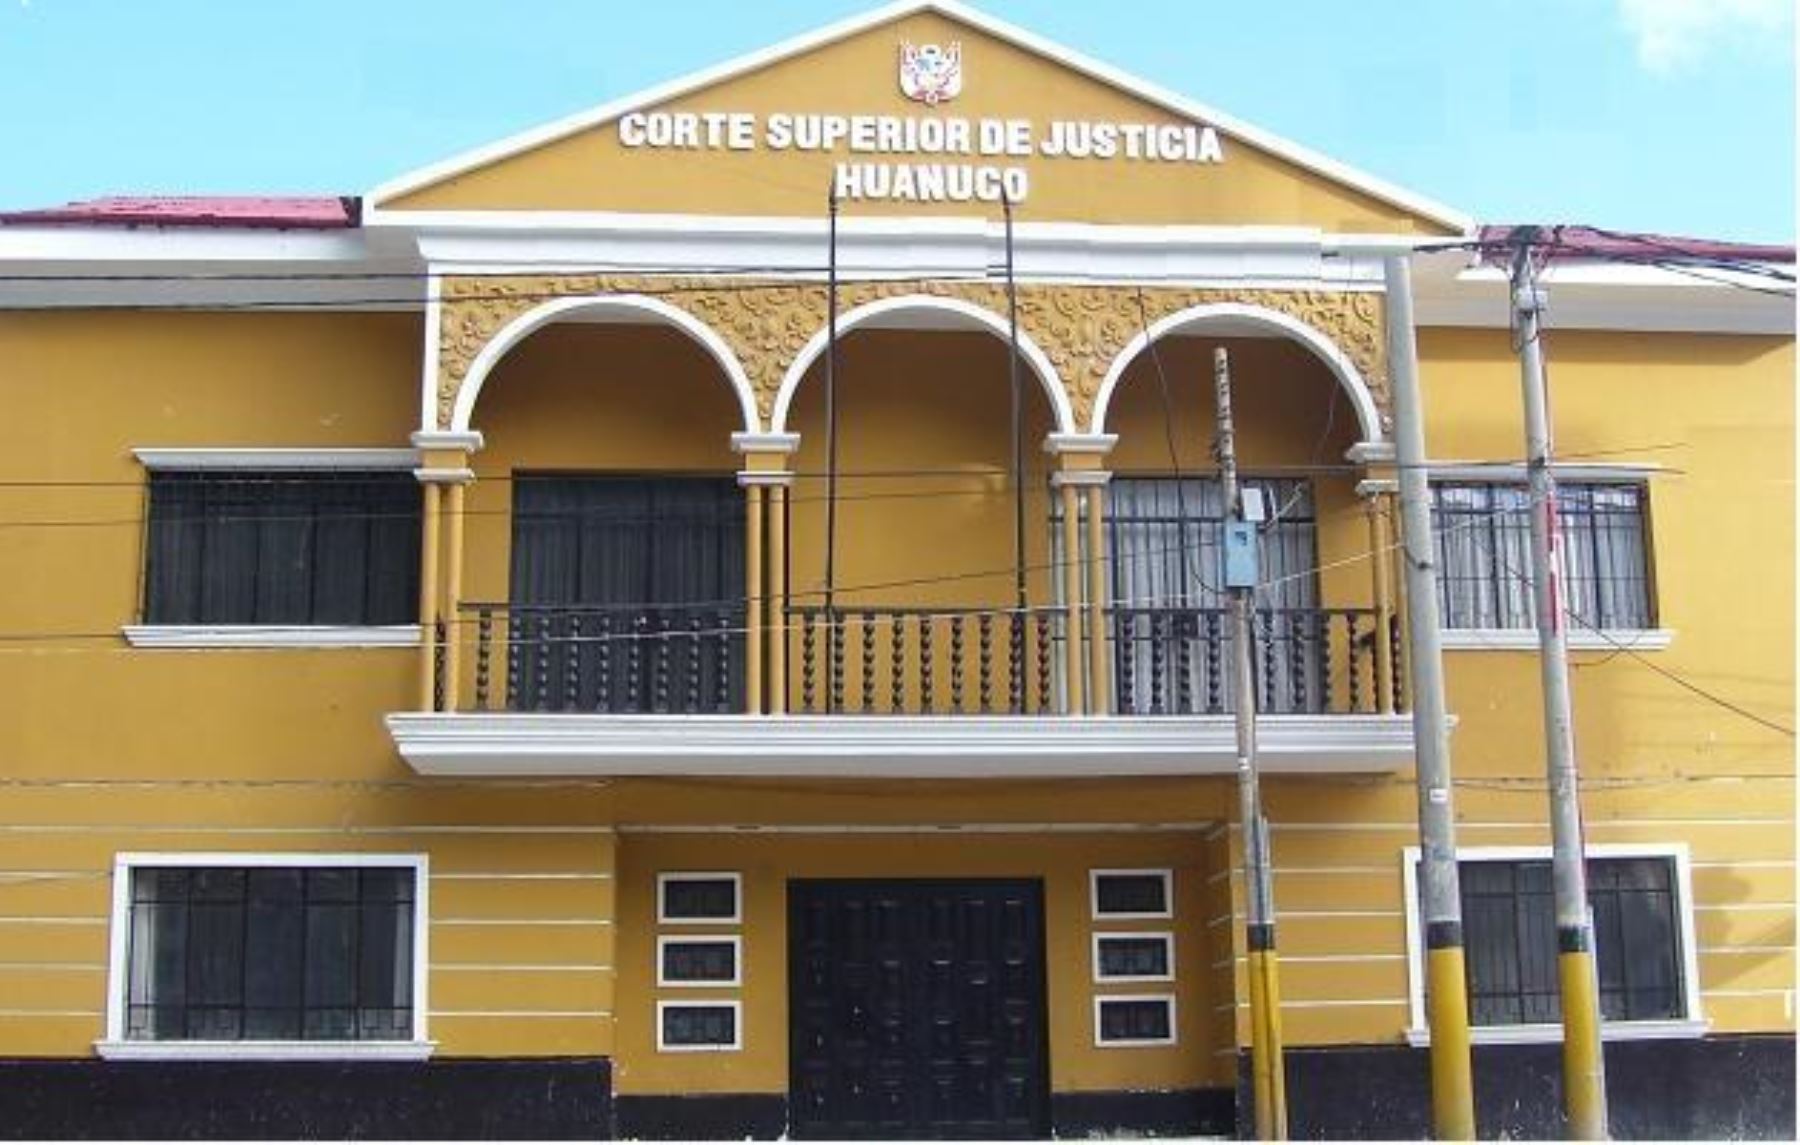 Ocma suspende a juez de Corte de Huánuco por presuntos hechos ilícitos. ANDINA/Difusión